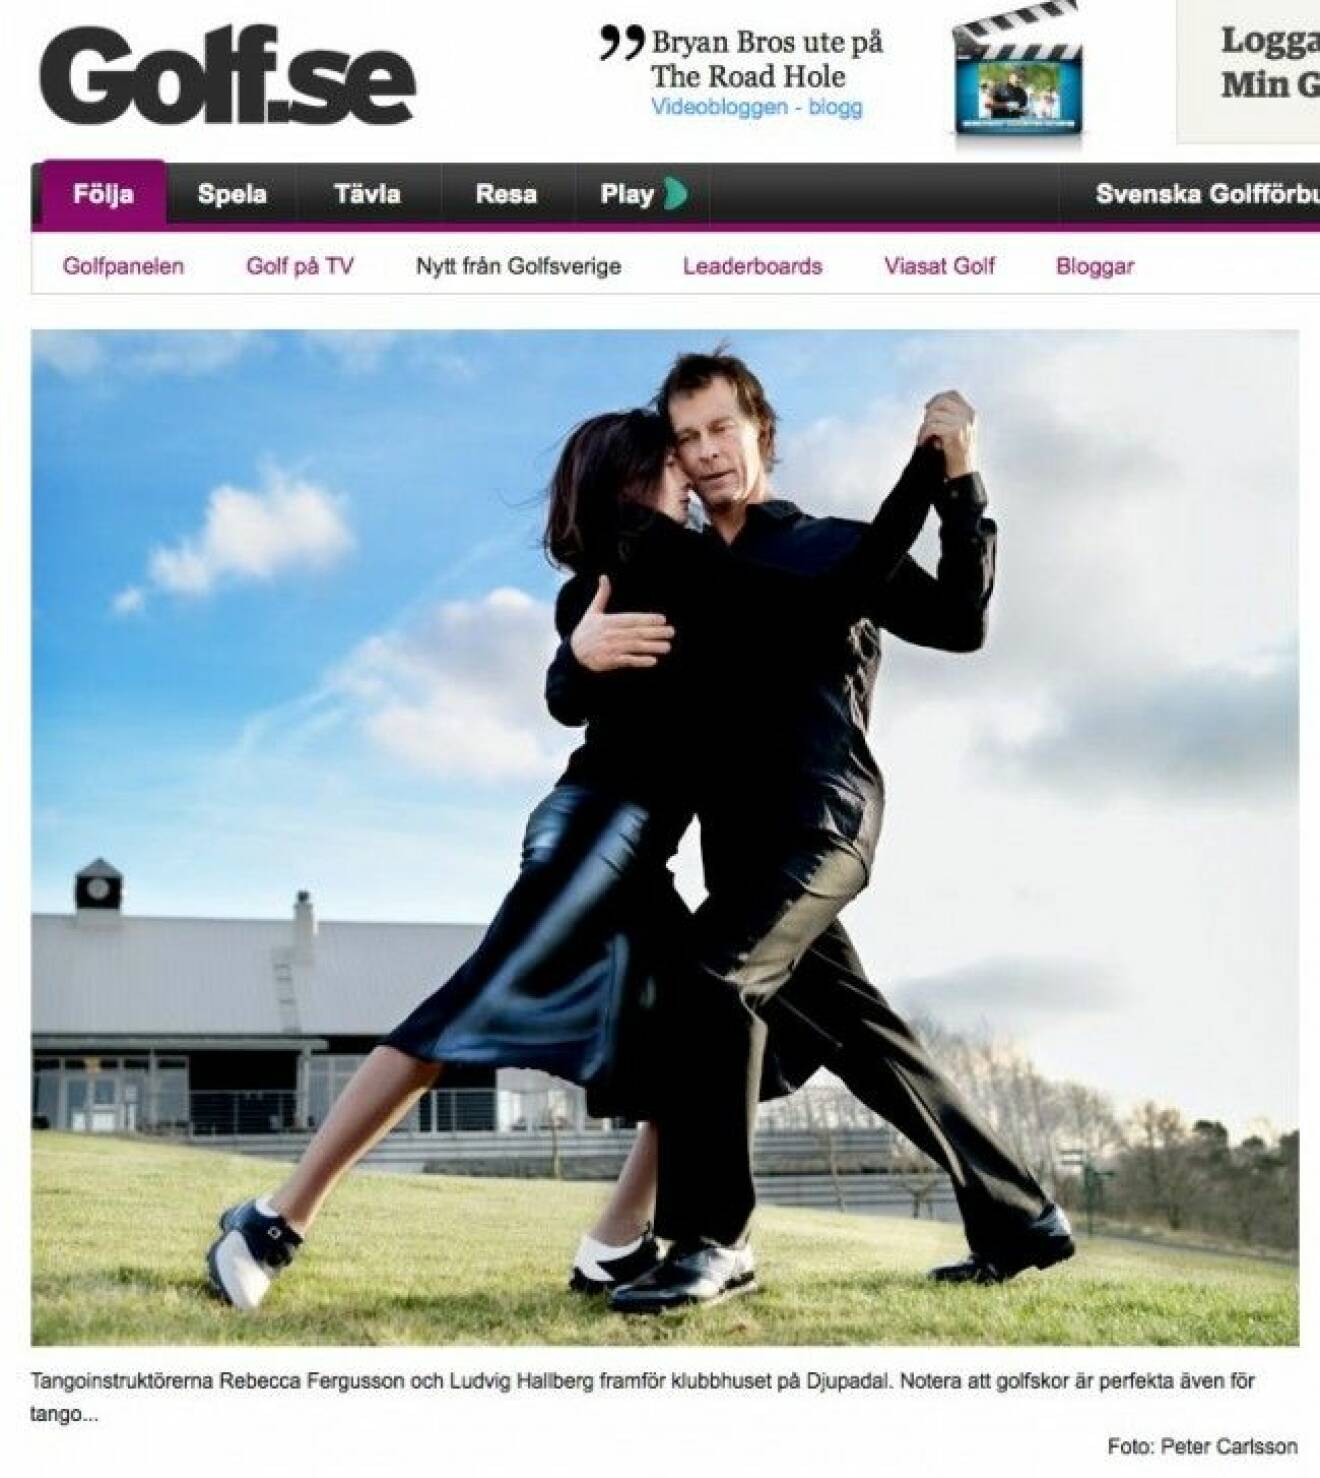 Rebecca Ferguson och Ludvig Hallberg har lärt ut tango på Österlen. Faksimil: golf.se